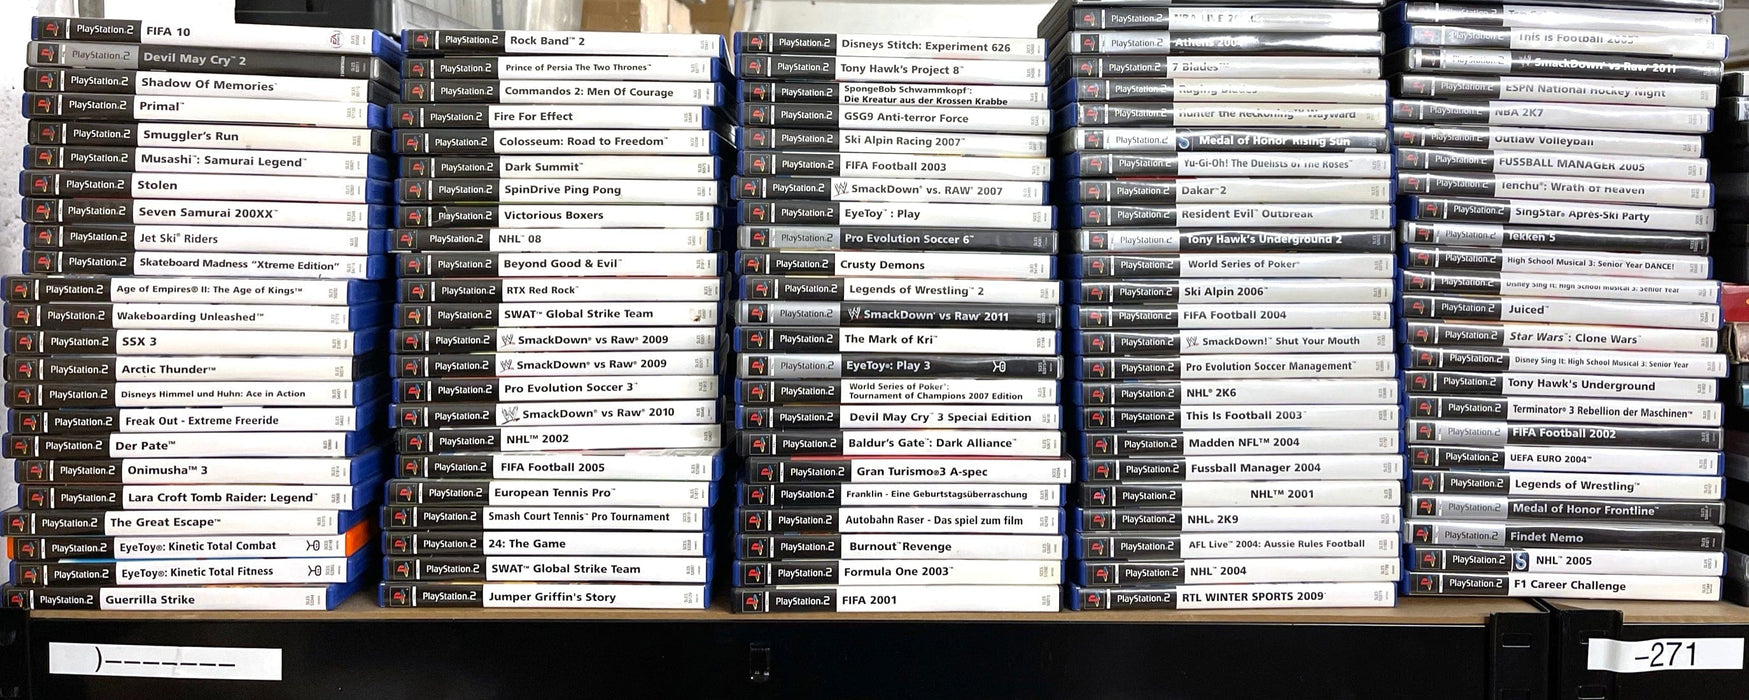 Glaciergames PlayStation 2 Game Medal of Honor: Frontline PlayStation 2 (Nr.303)